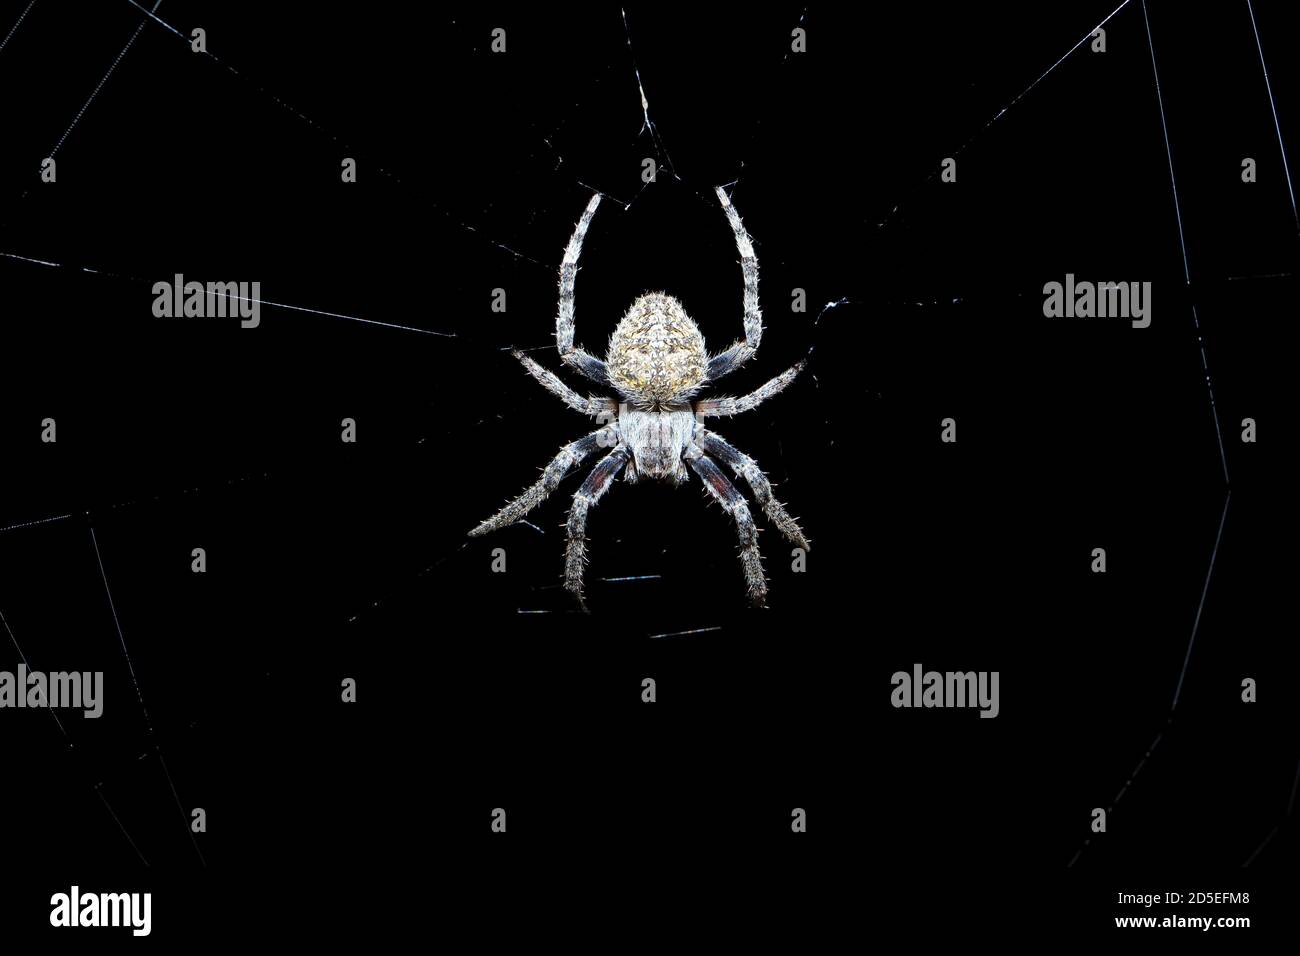 Araña pequeña sentada en su red por la noche con un fondo oscuro Foto de stock